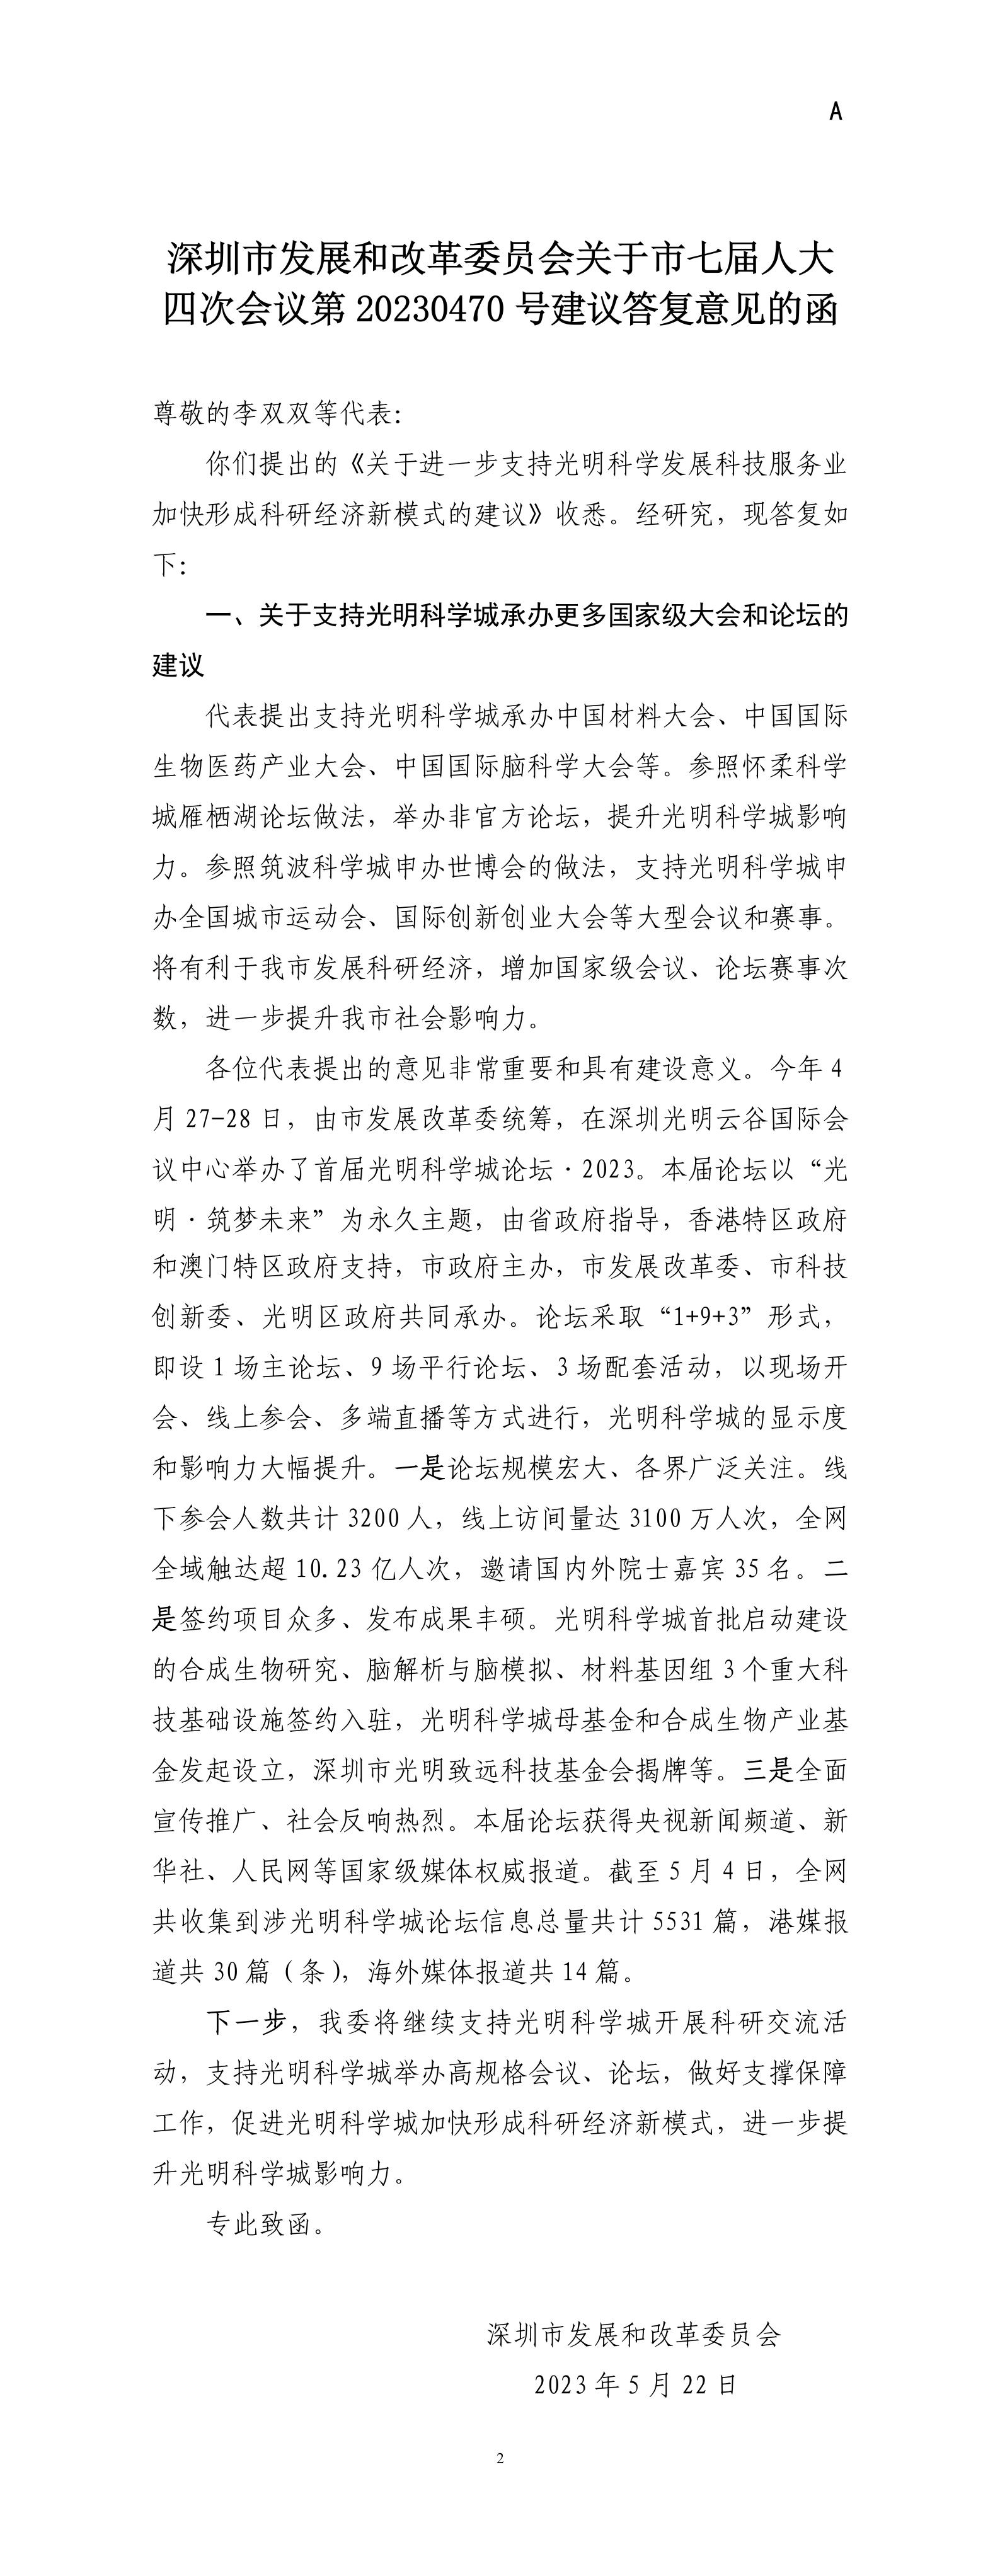 深圳市发展和改革委员会关于市七届人大四次会议第20230470号建议答复意见的函.jpg